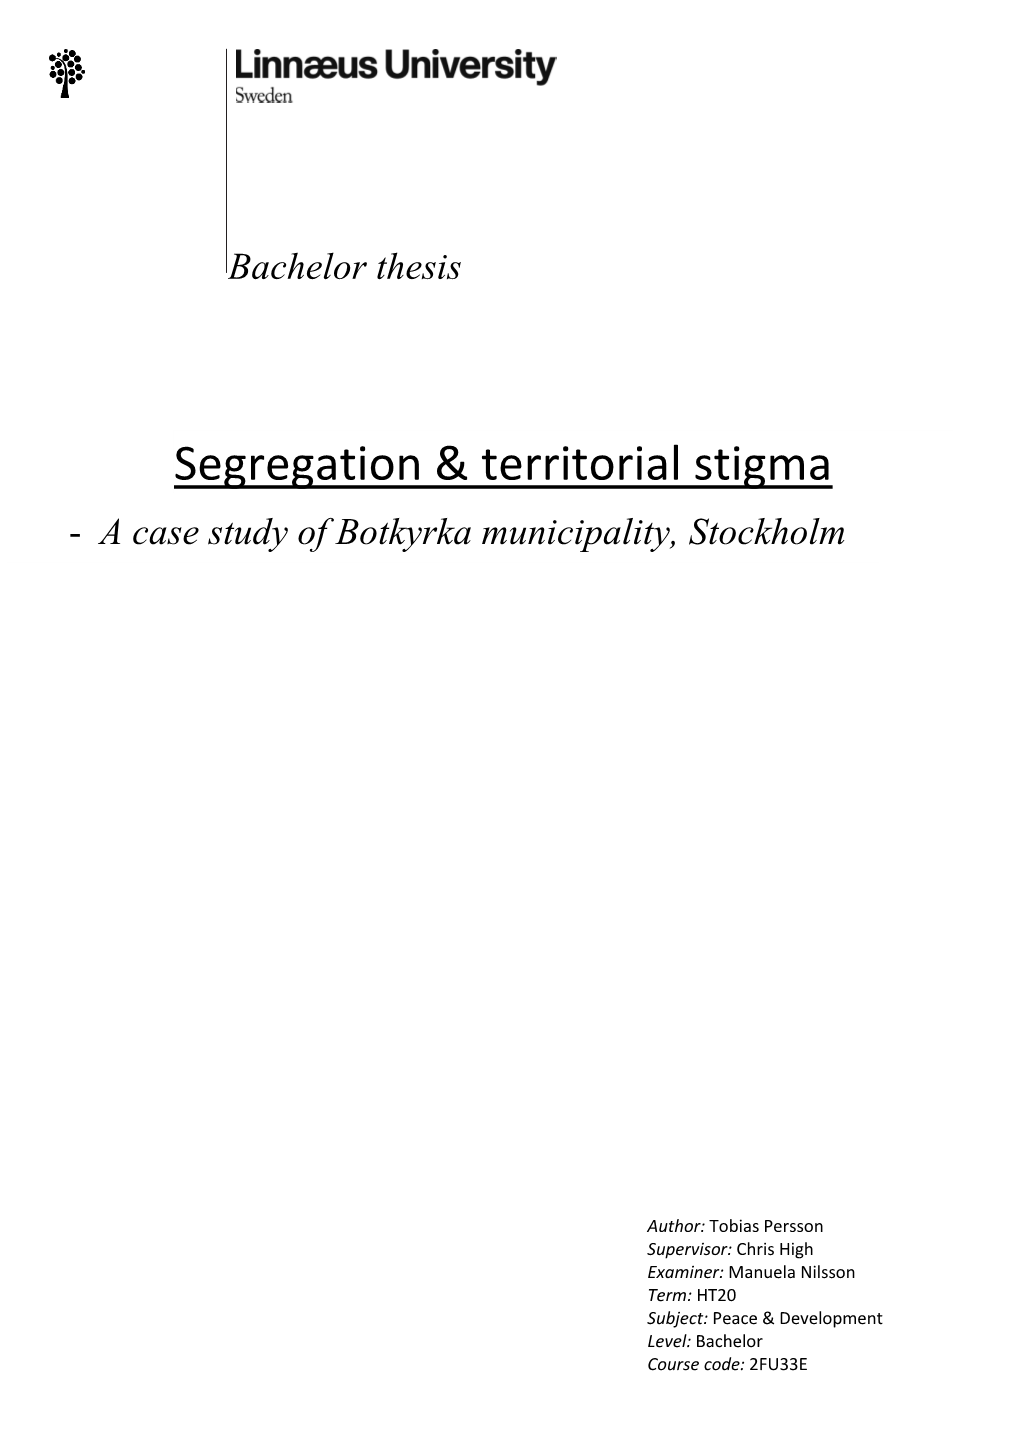 Segregation & Territorial Stigma